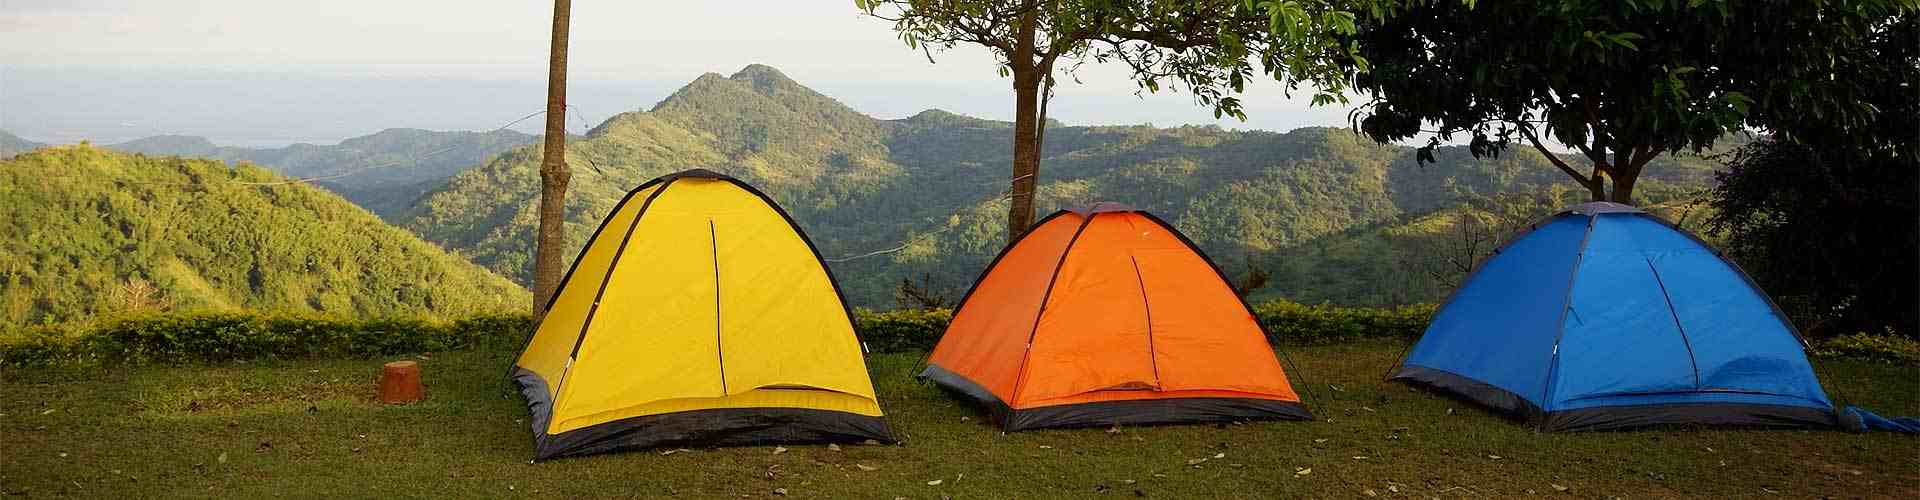 Campings y bungalows en Renuncio
           
           


          
          
          


